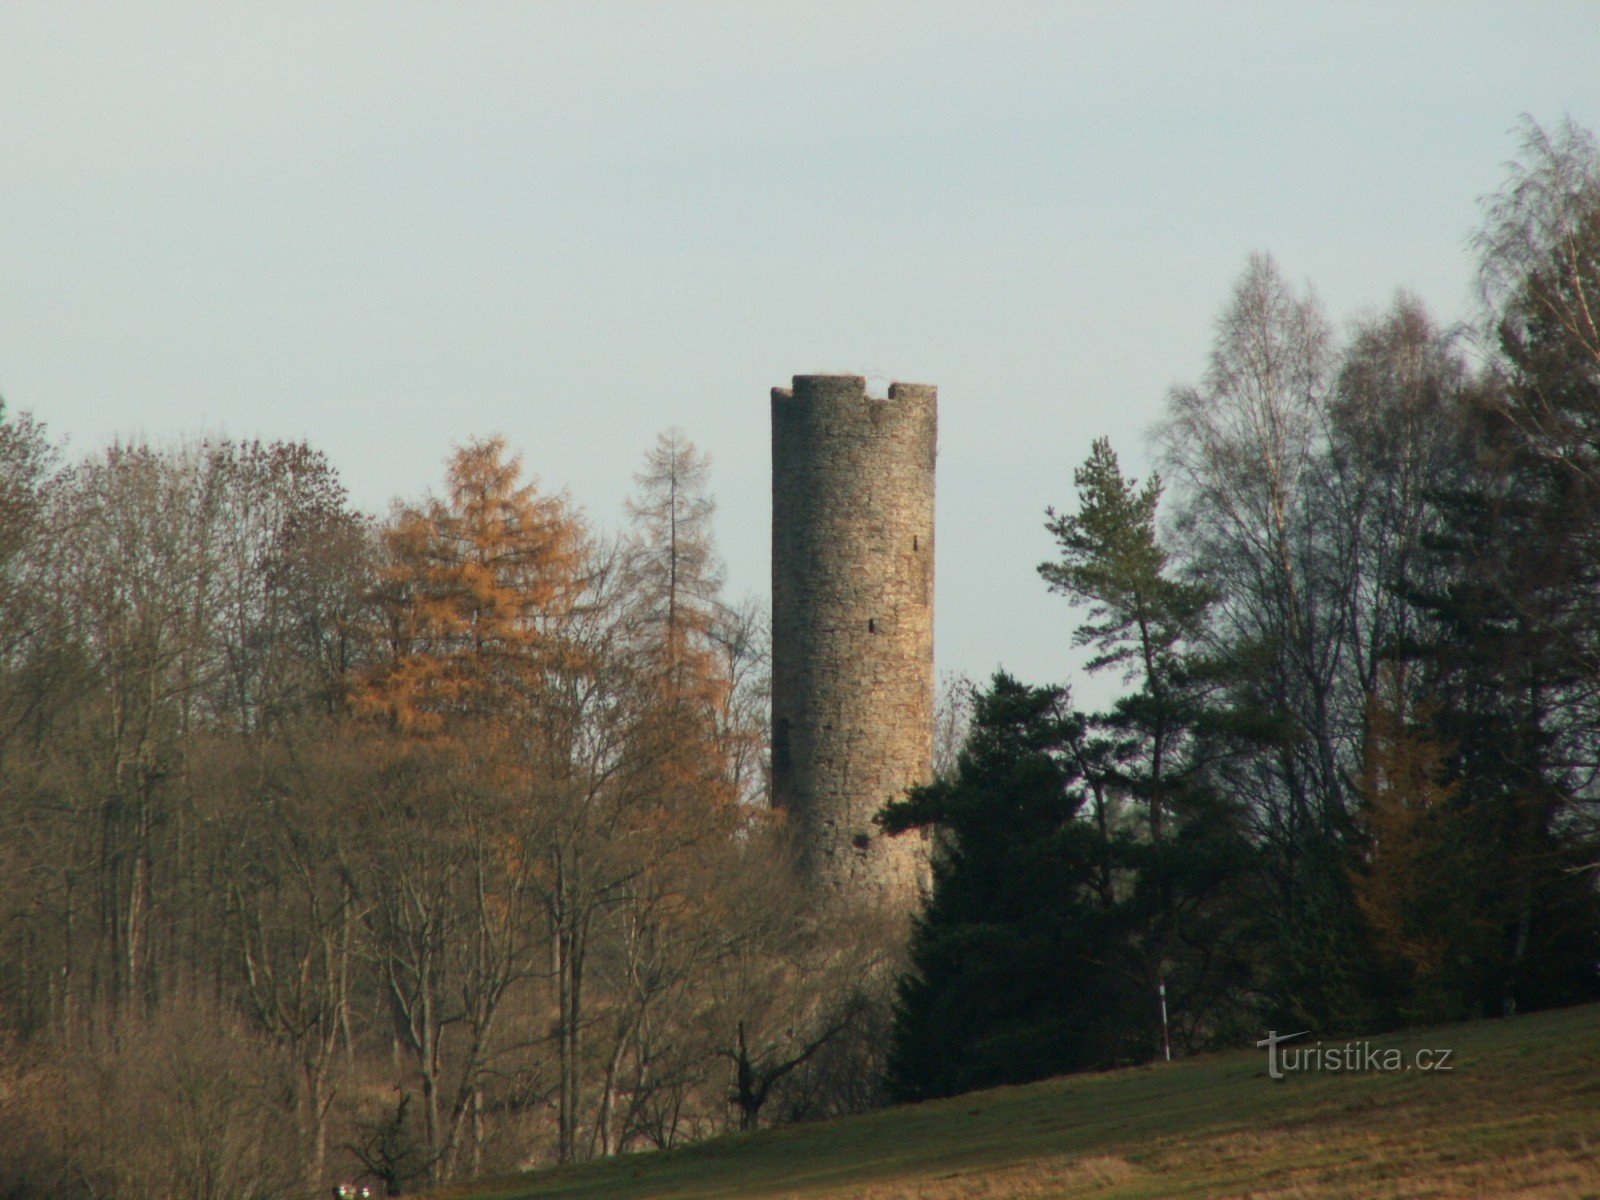 Башня бывшего замка Нойберг